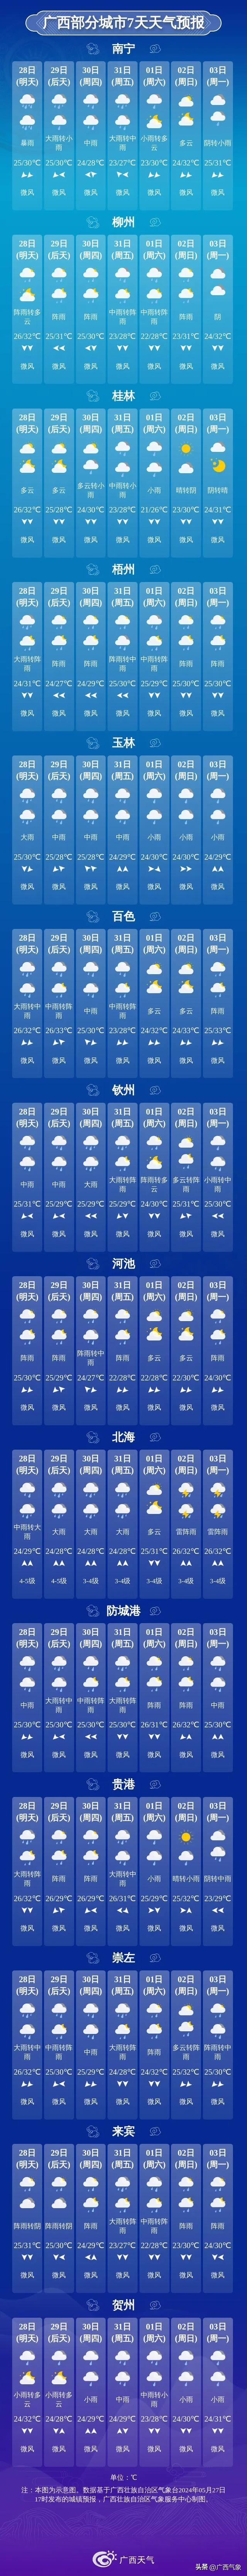 广西部分城市7天天气预报北部湾海面:未来三天,雷雨时有8级以上雷暴